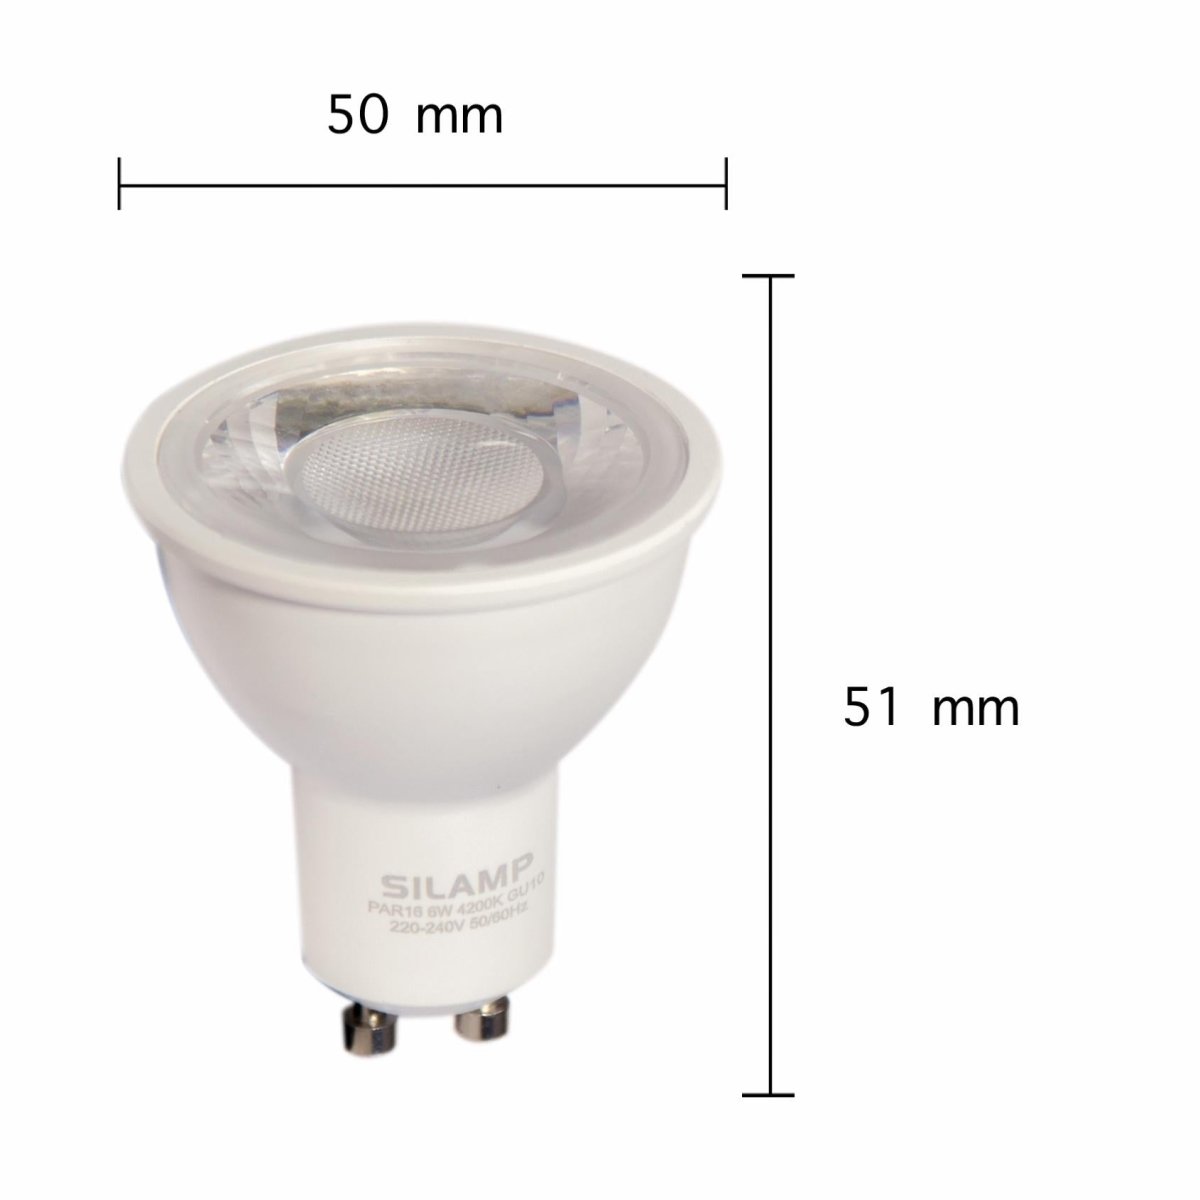 Ampoule LED GU10 Dimmable 8W 220V SMD2835 PAR16 60° (Pack de 100) - Silamp France